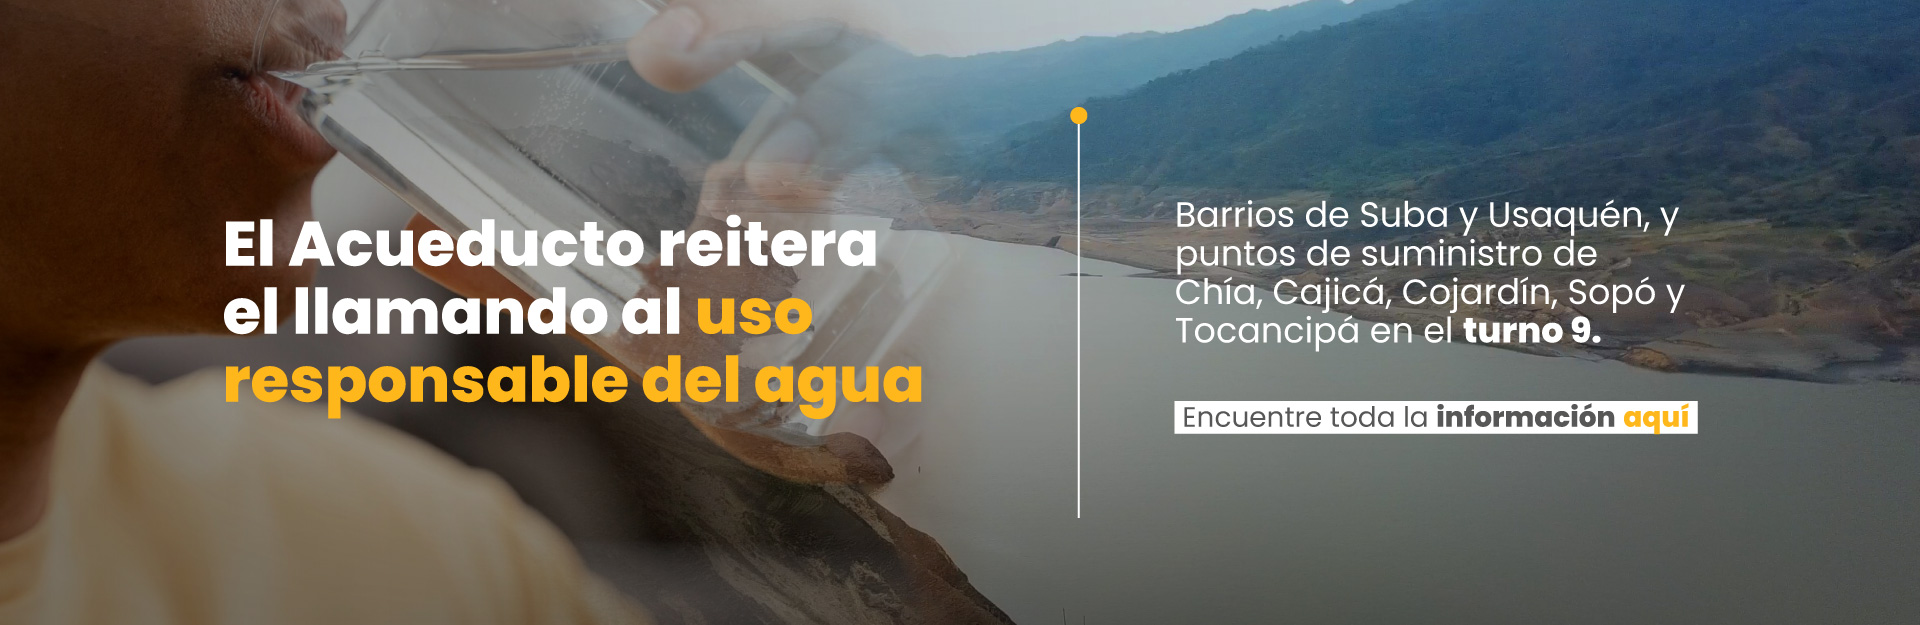 Bogotá termina la primera rotación de racionamiento de agua. El sábado retoma el primer turno